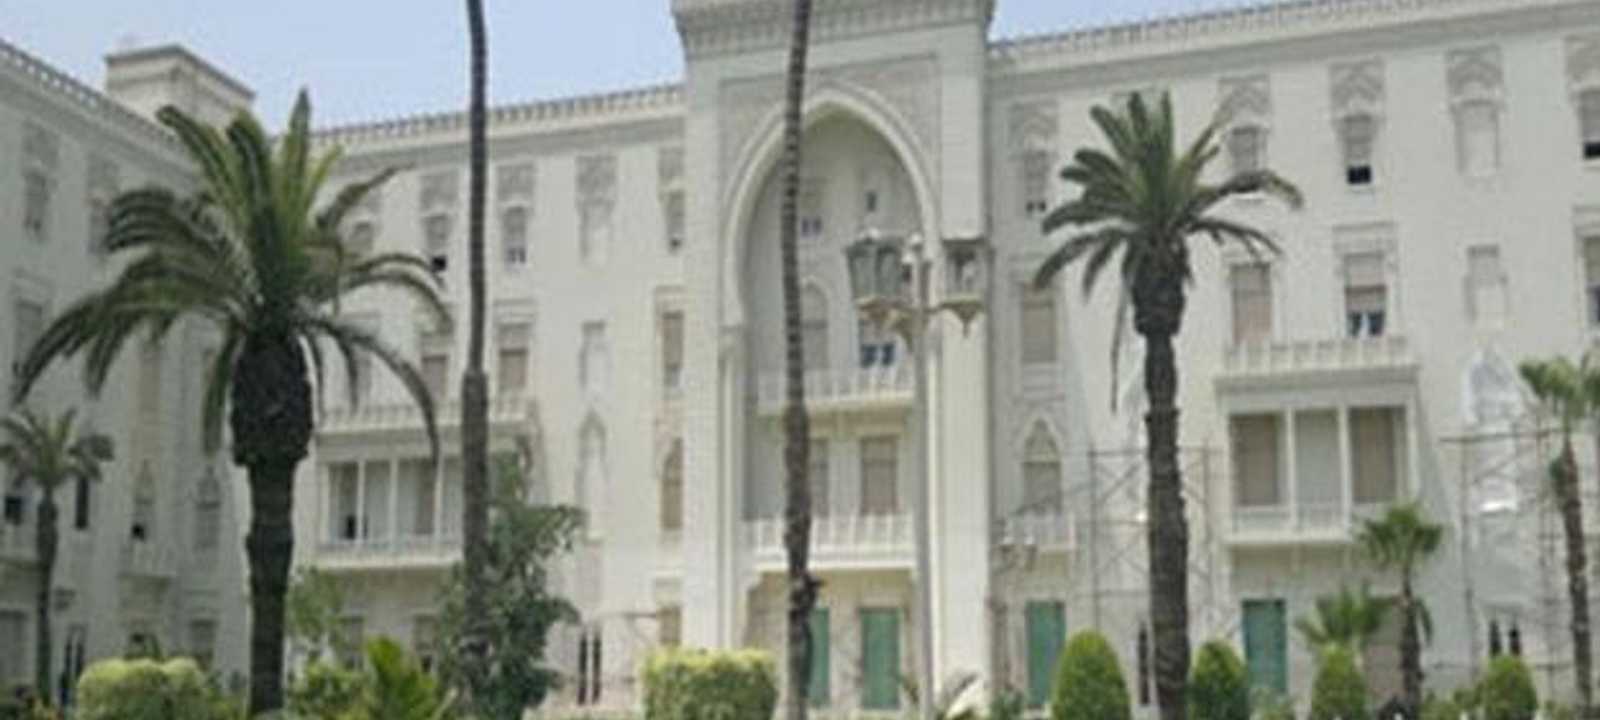 قصر الاتحادية الرئاسي في القاهرة